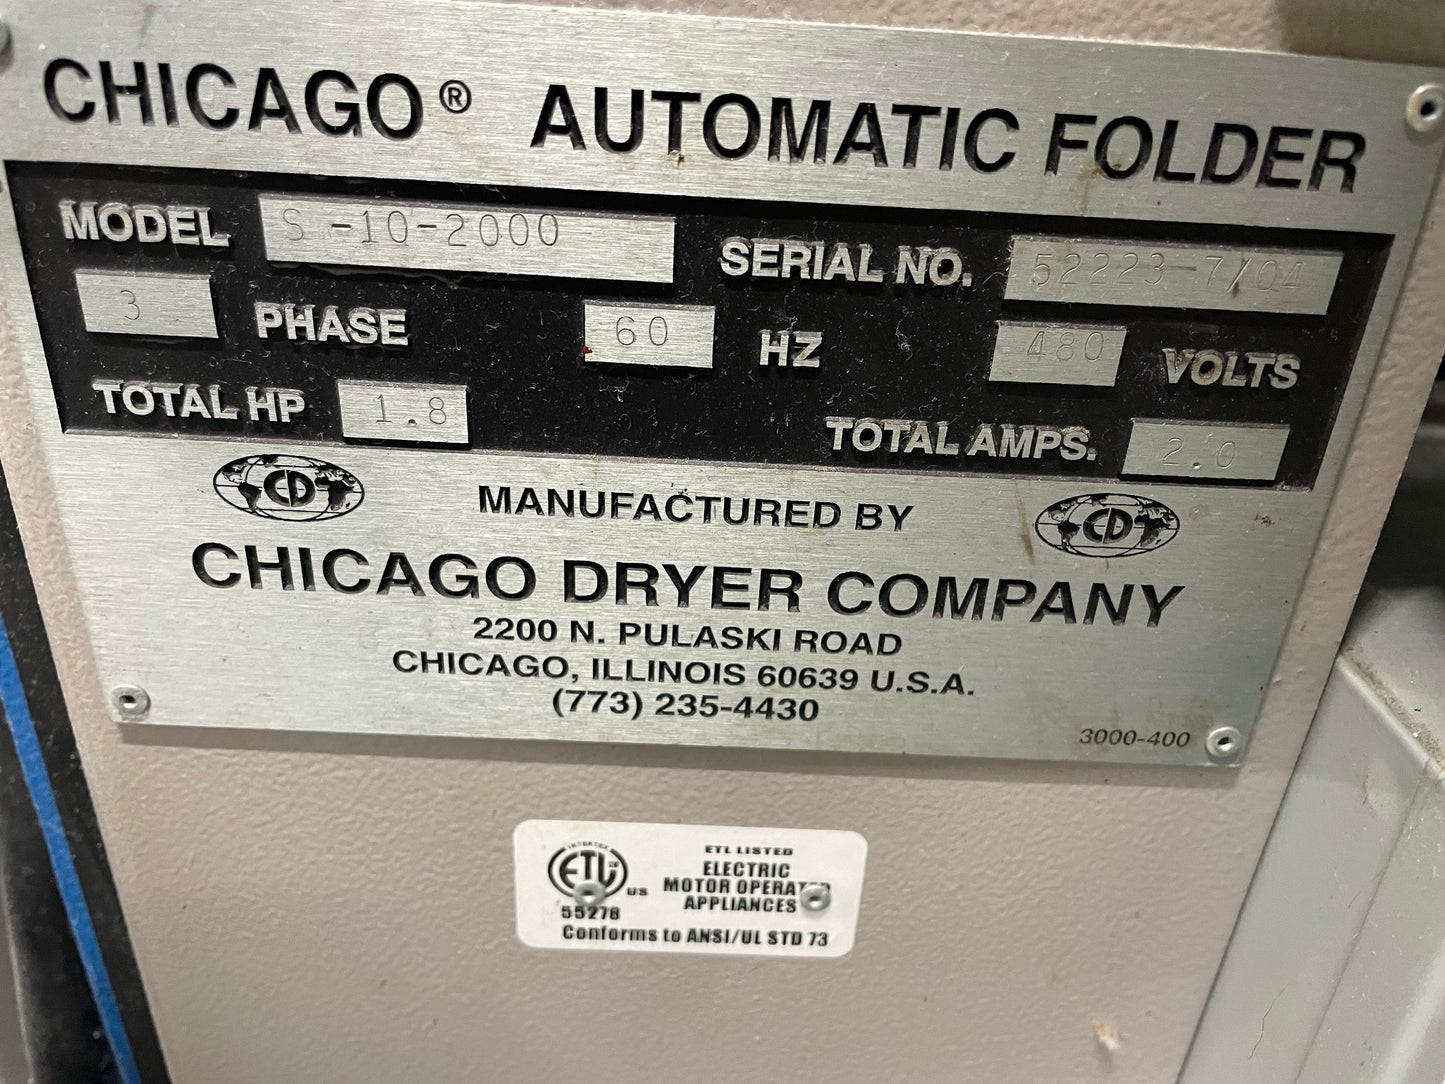 Chicago Skyline S-10-2000 Sheet Folder